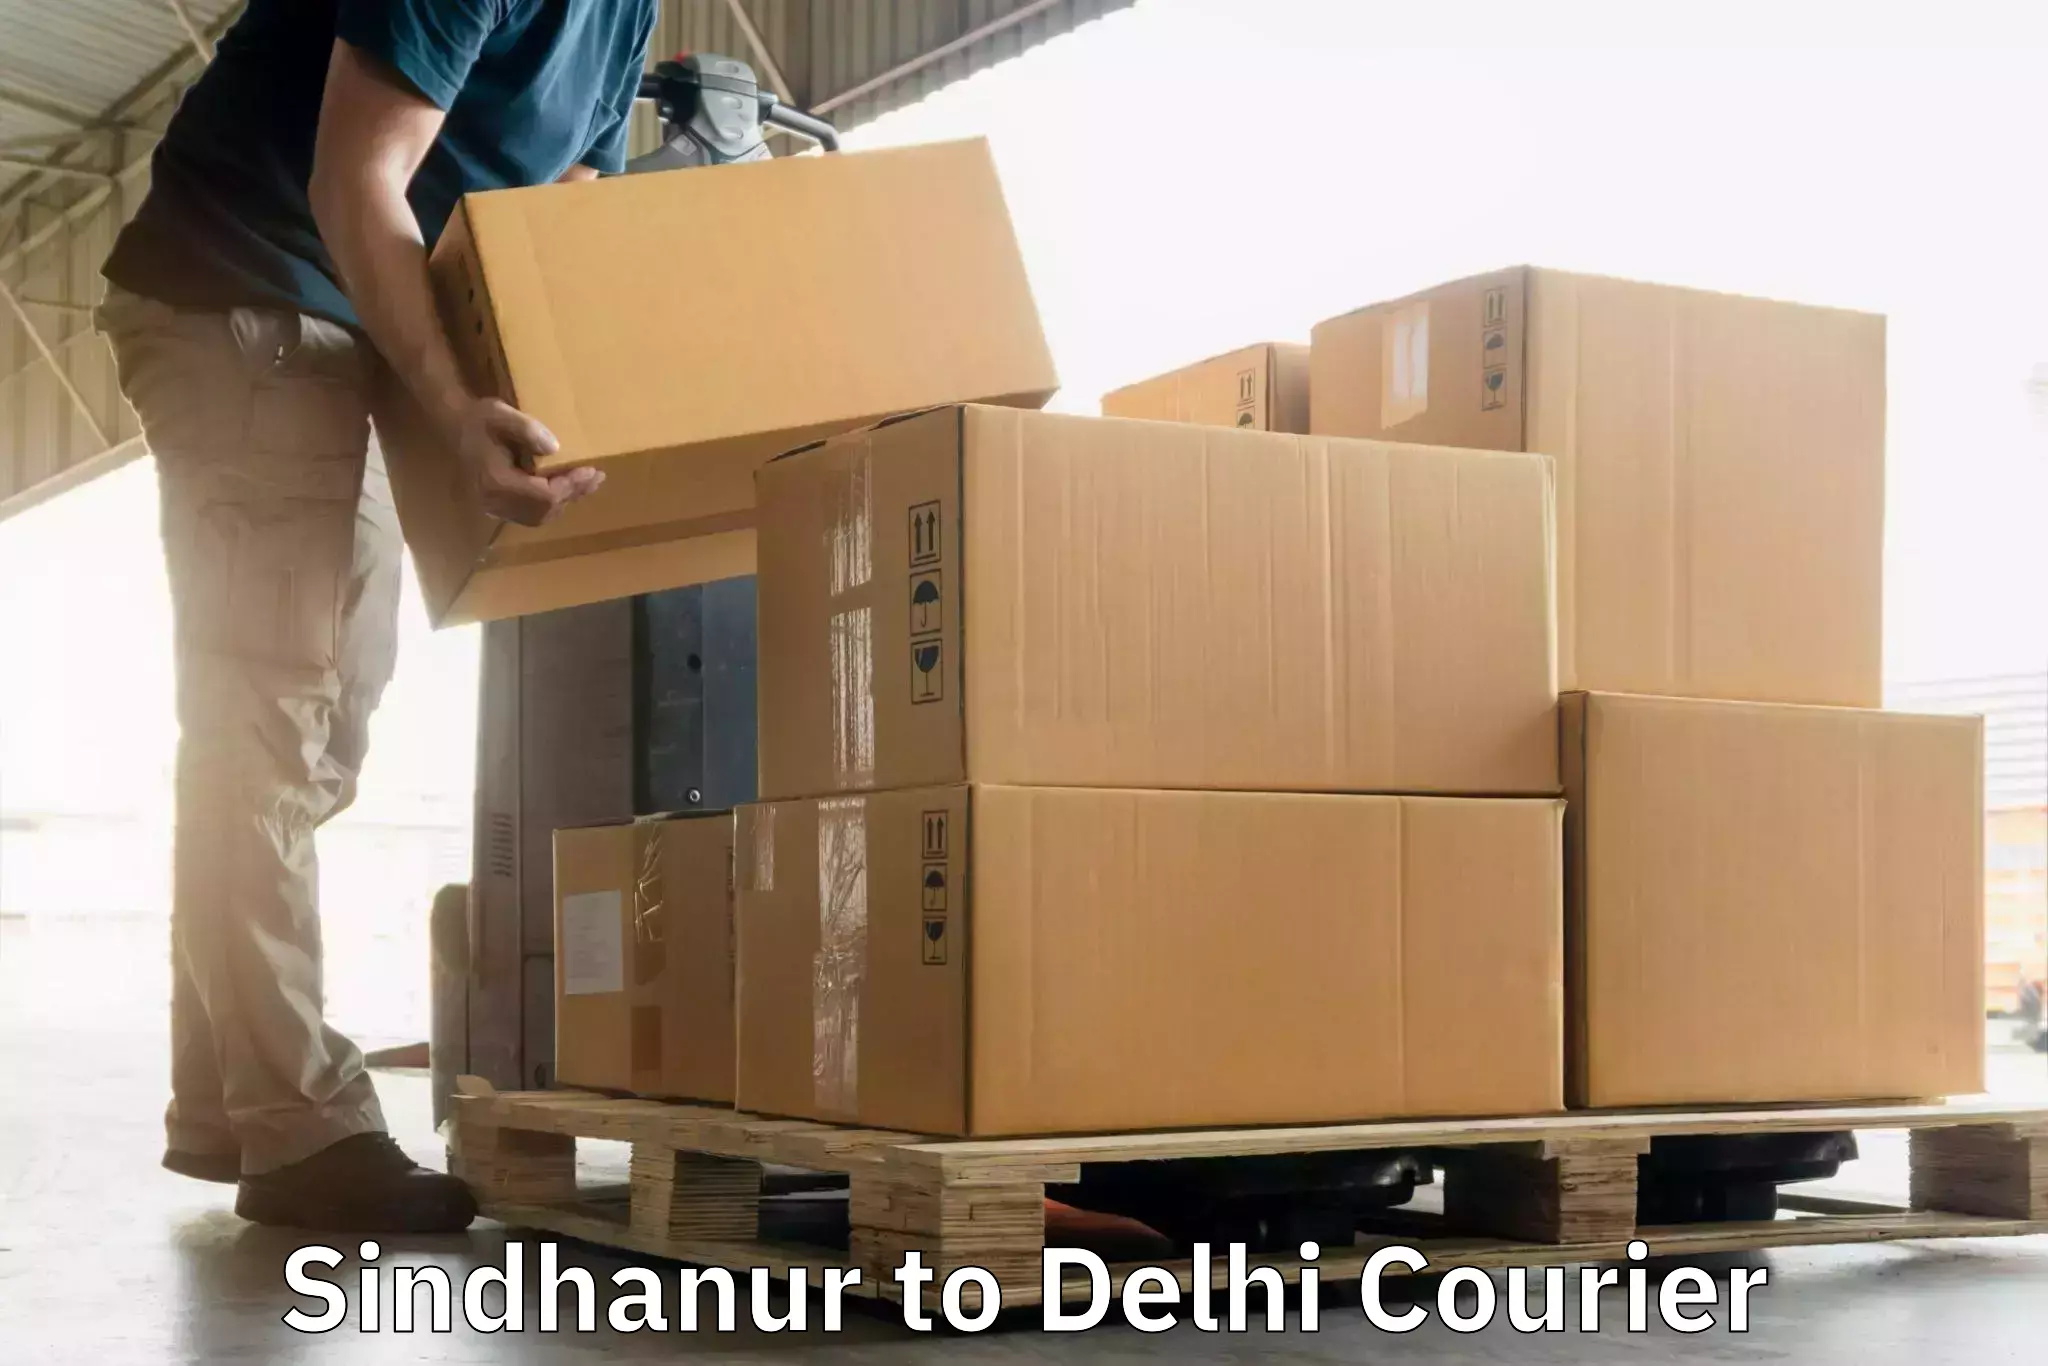 24/7 courier service Sindhanur to Delhi